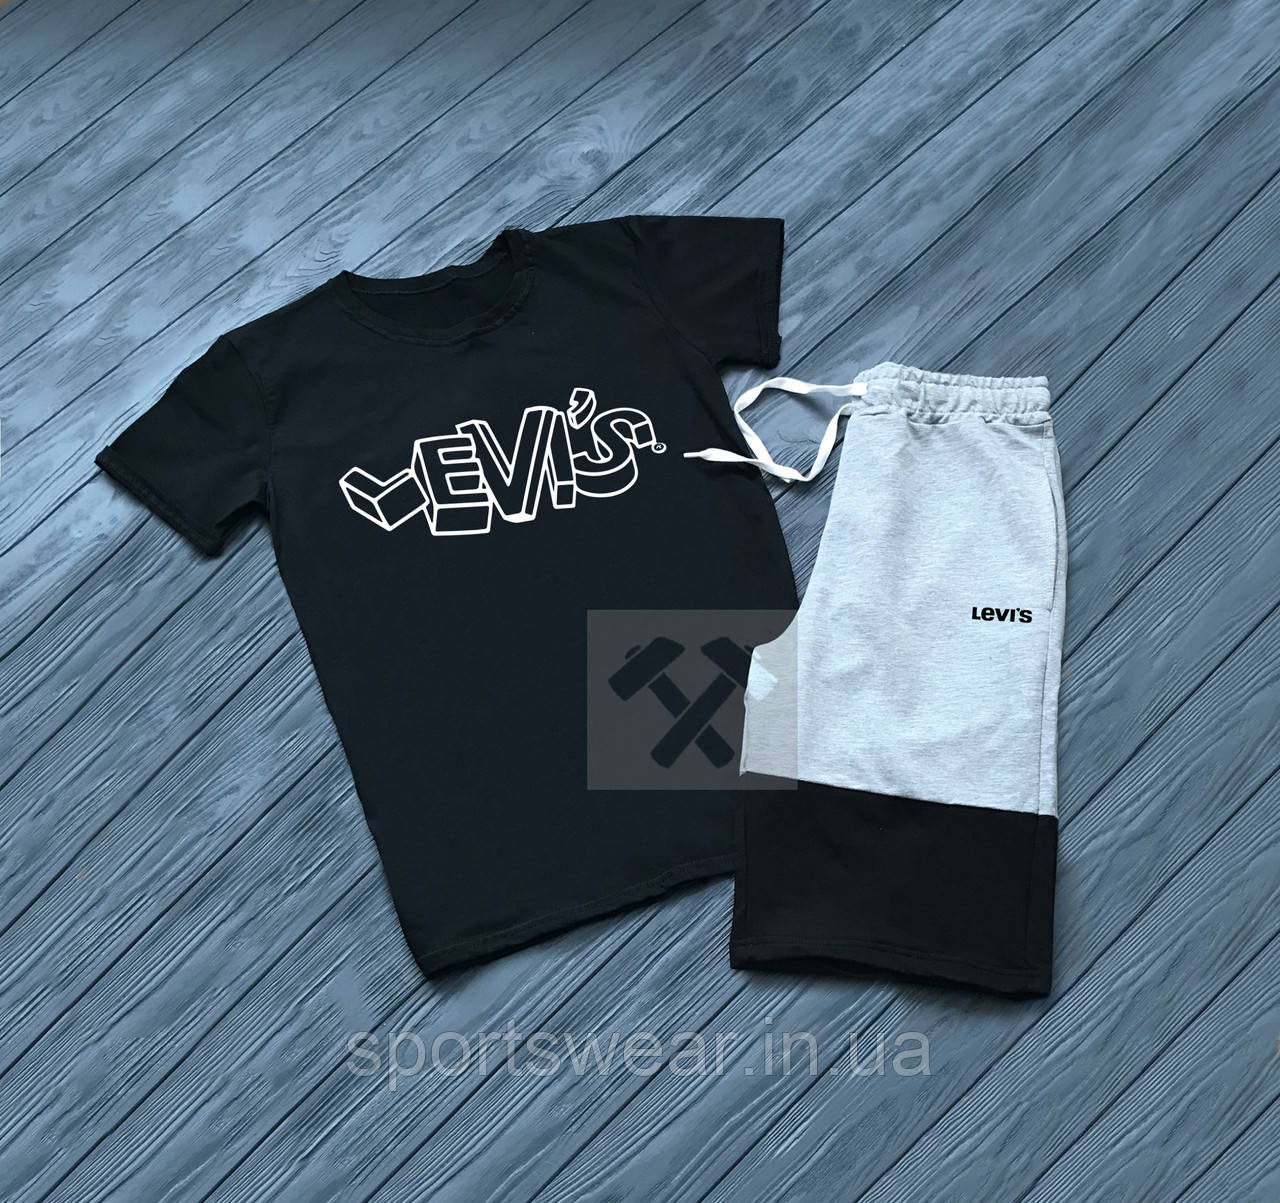 

Мужской комплект футболка + шорты Levis черного и серого цвета "" В стиле Levi's ""